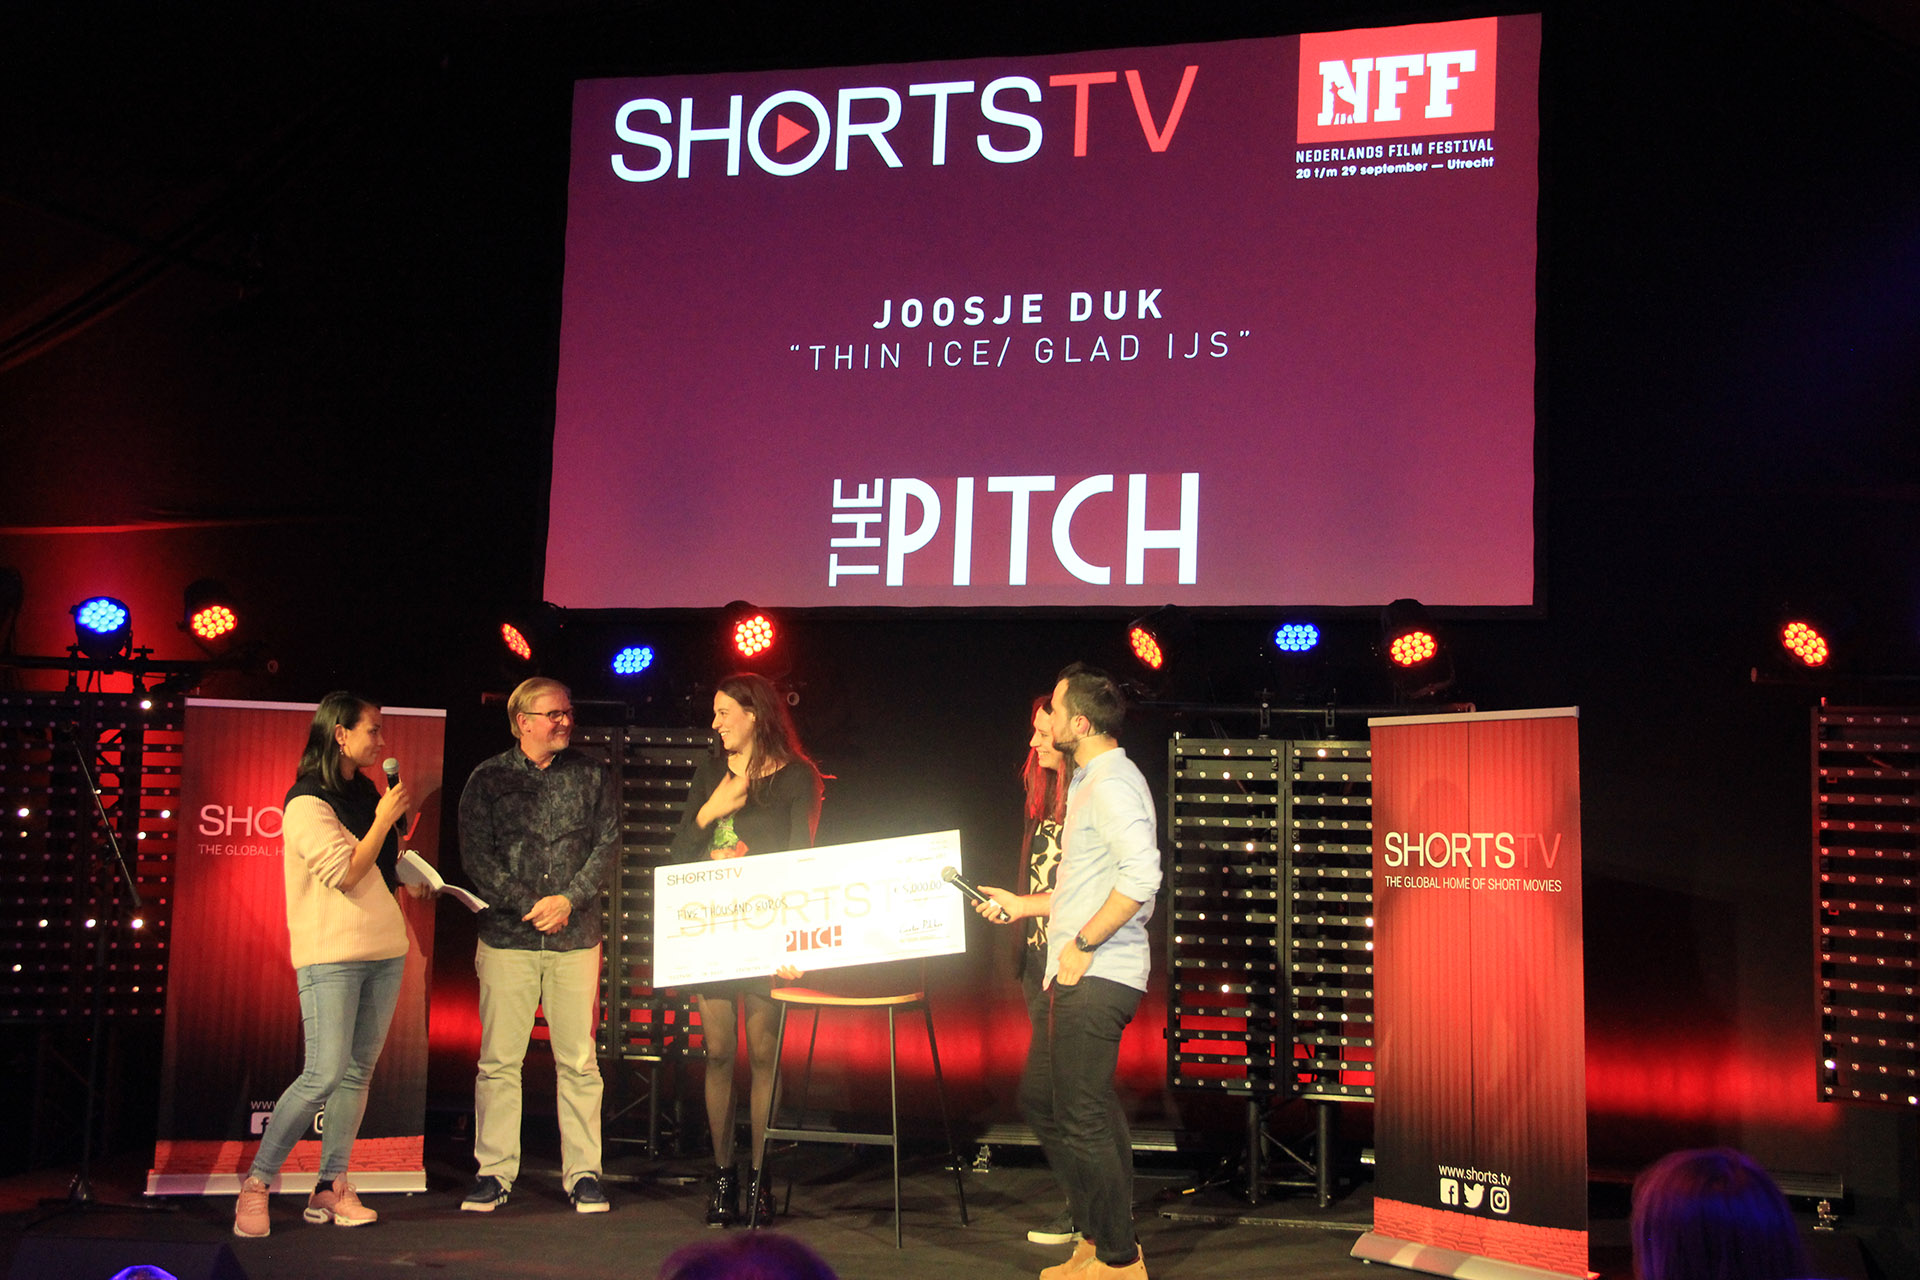 Joosje Duk is awarded her prize